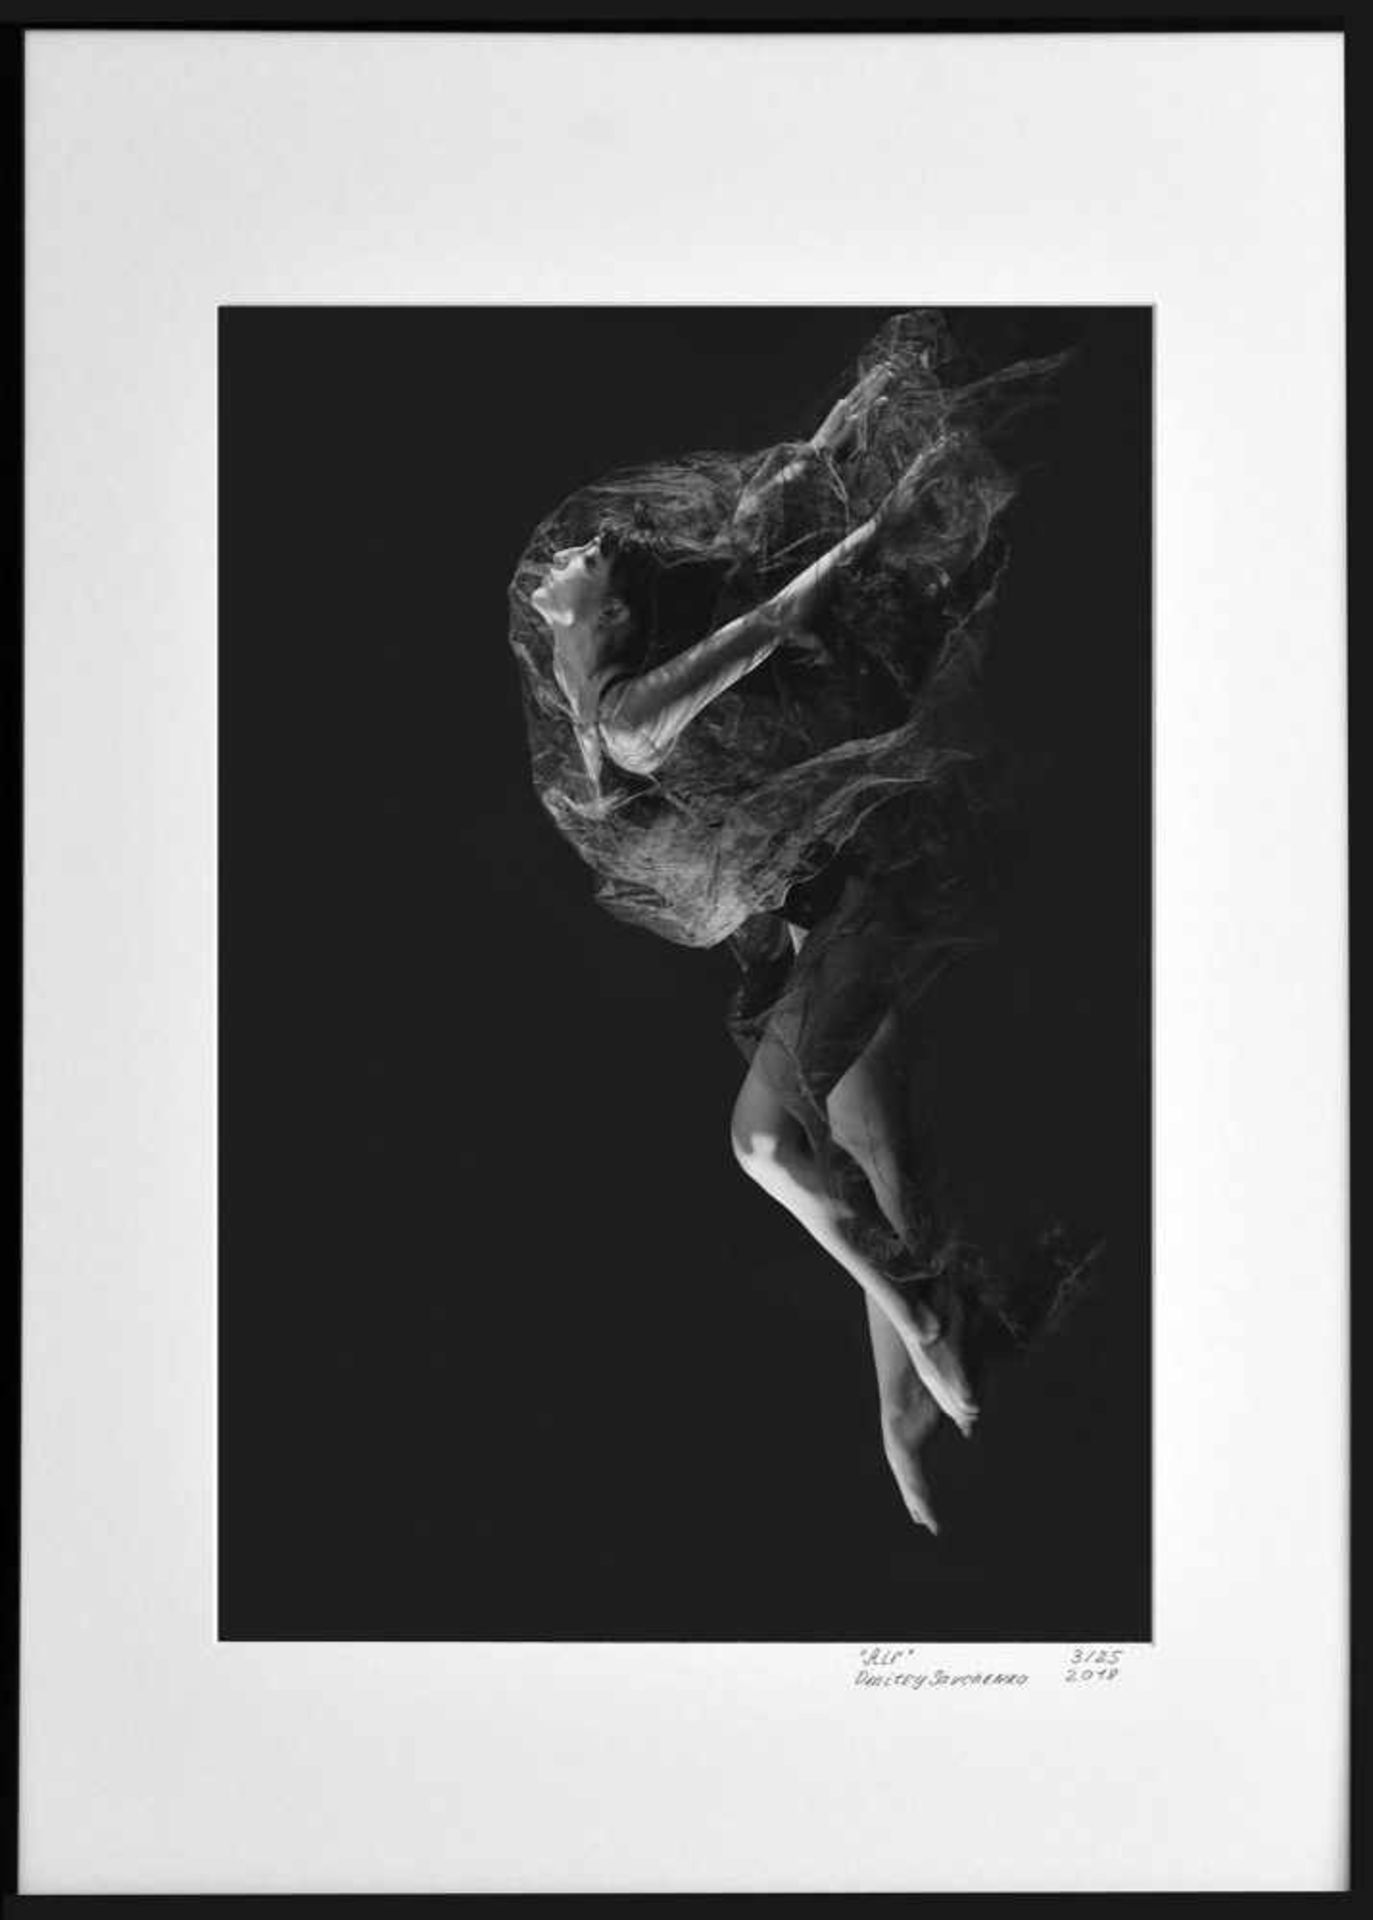 Dmitry Savchenko (1970 USSR) Air, 2017, Giclée-Druck auf schwerem, mattem Papier, Fotografie unter